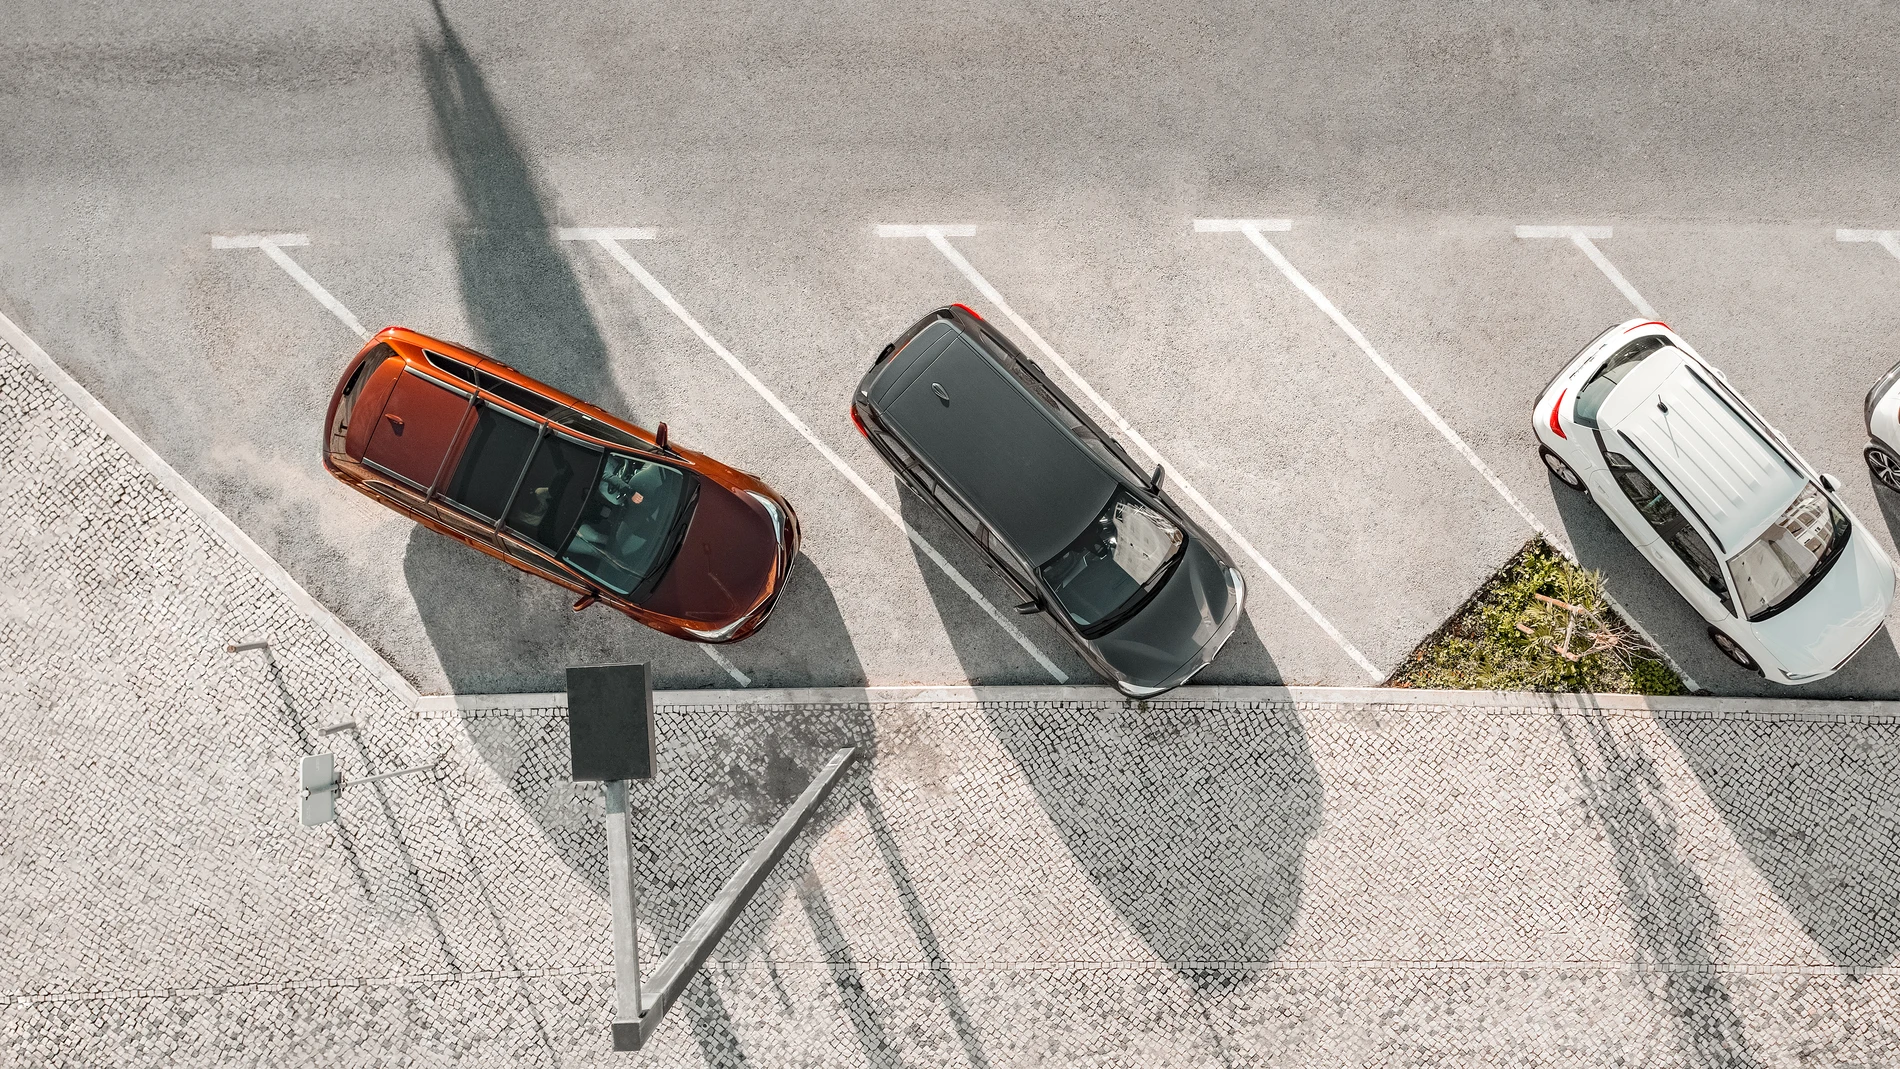 Una de las multas más comunes de la DTG se debe al mal aparcamiento o estacionamiento del vehículo